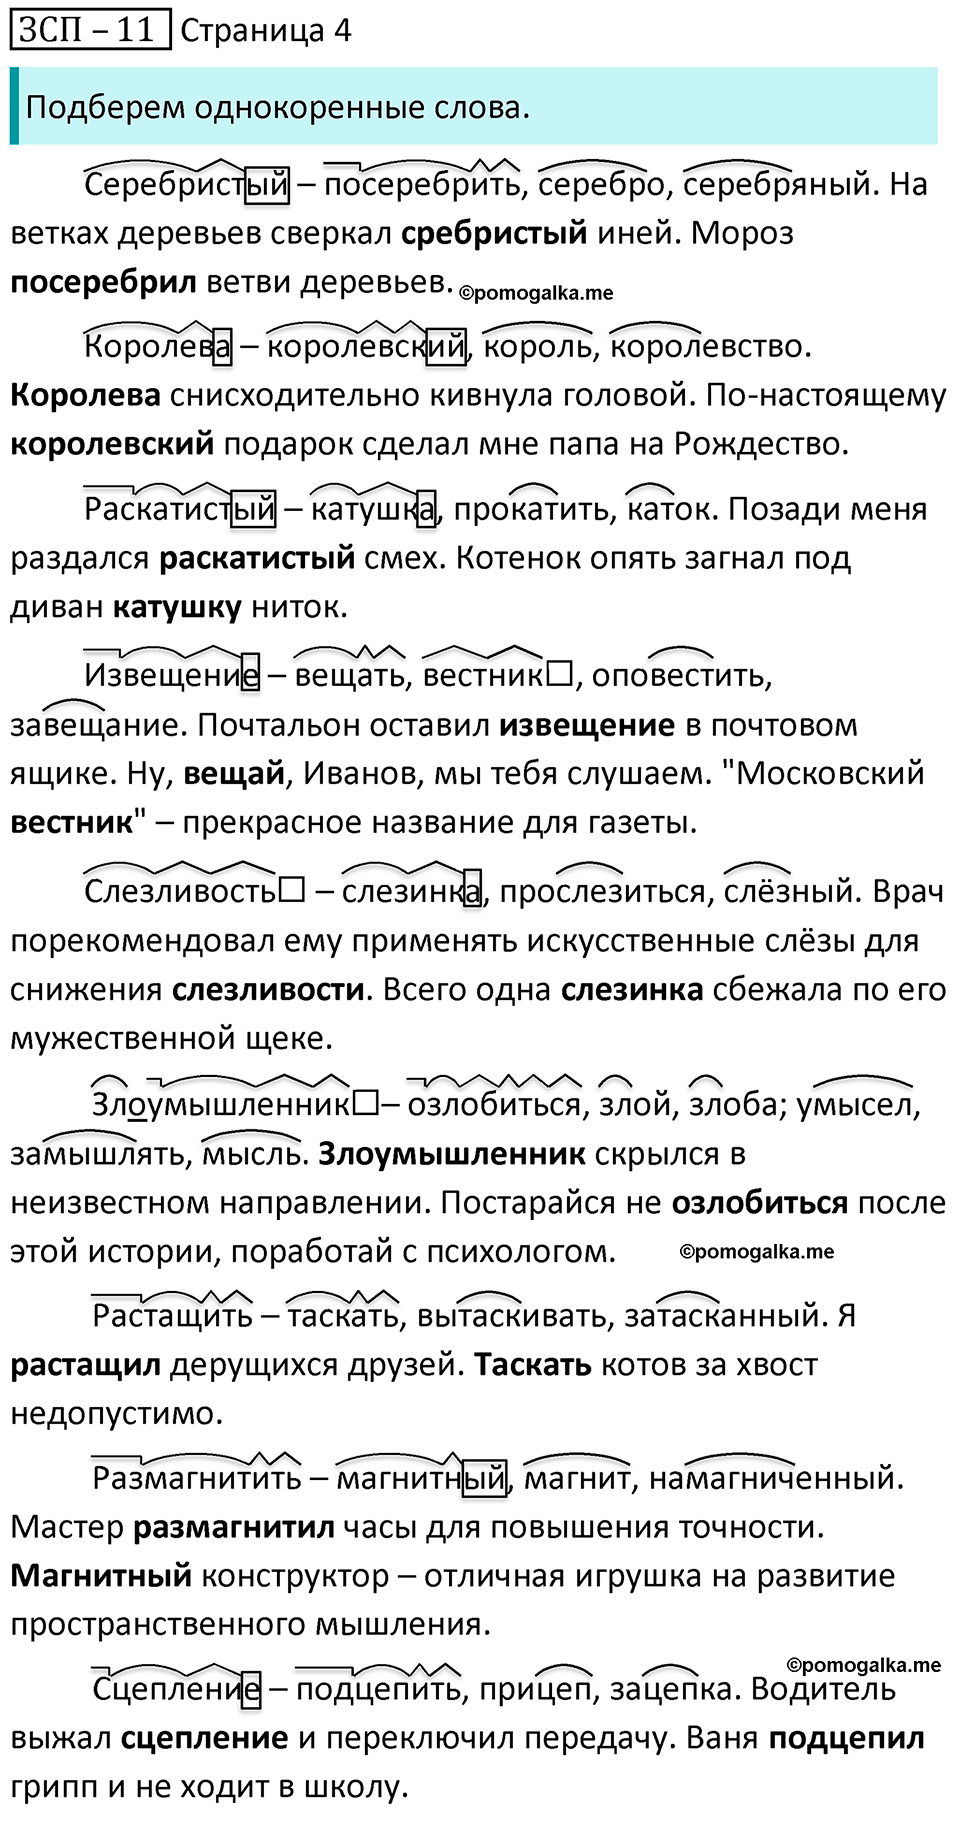 часть 2 страница 4 ЗСП-11 русский язык 5 класс Разумовская, Львова, Капинос, Львов 2021